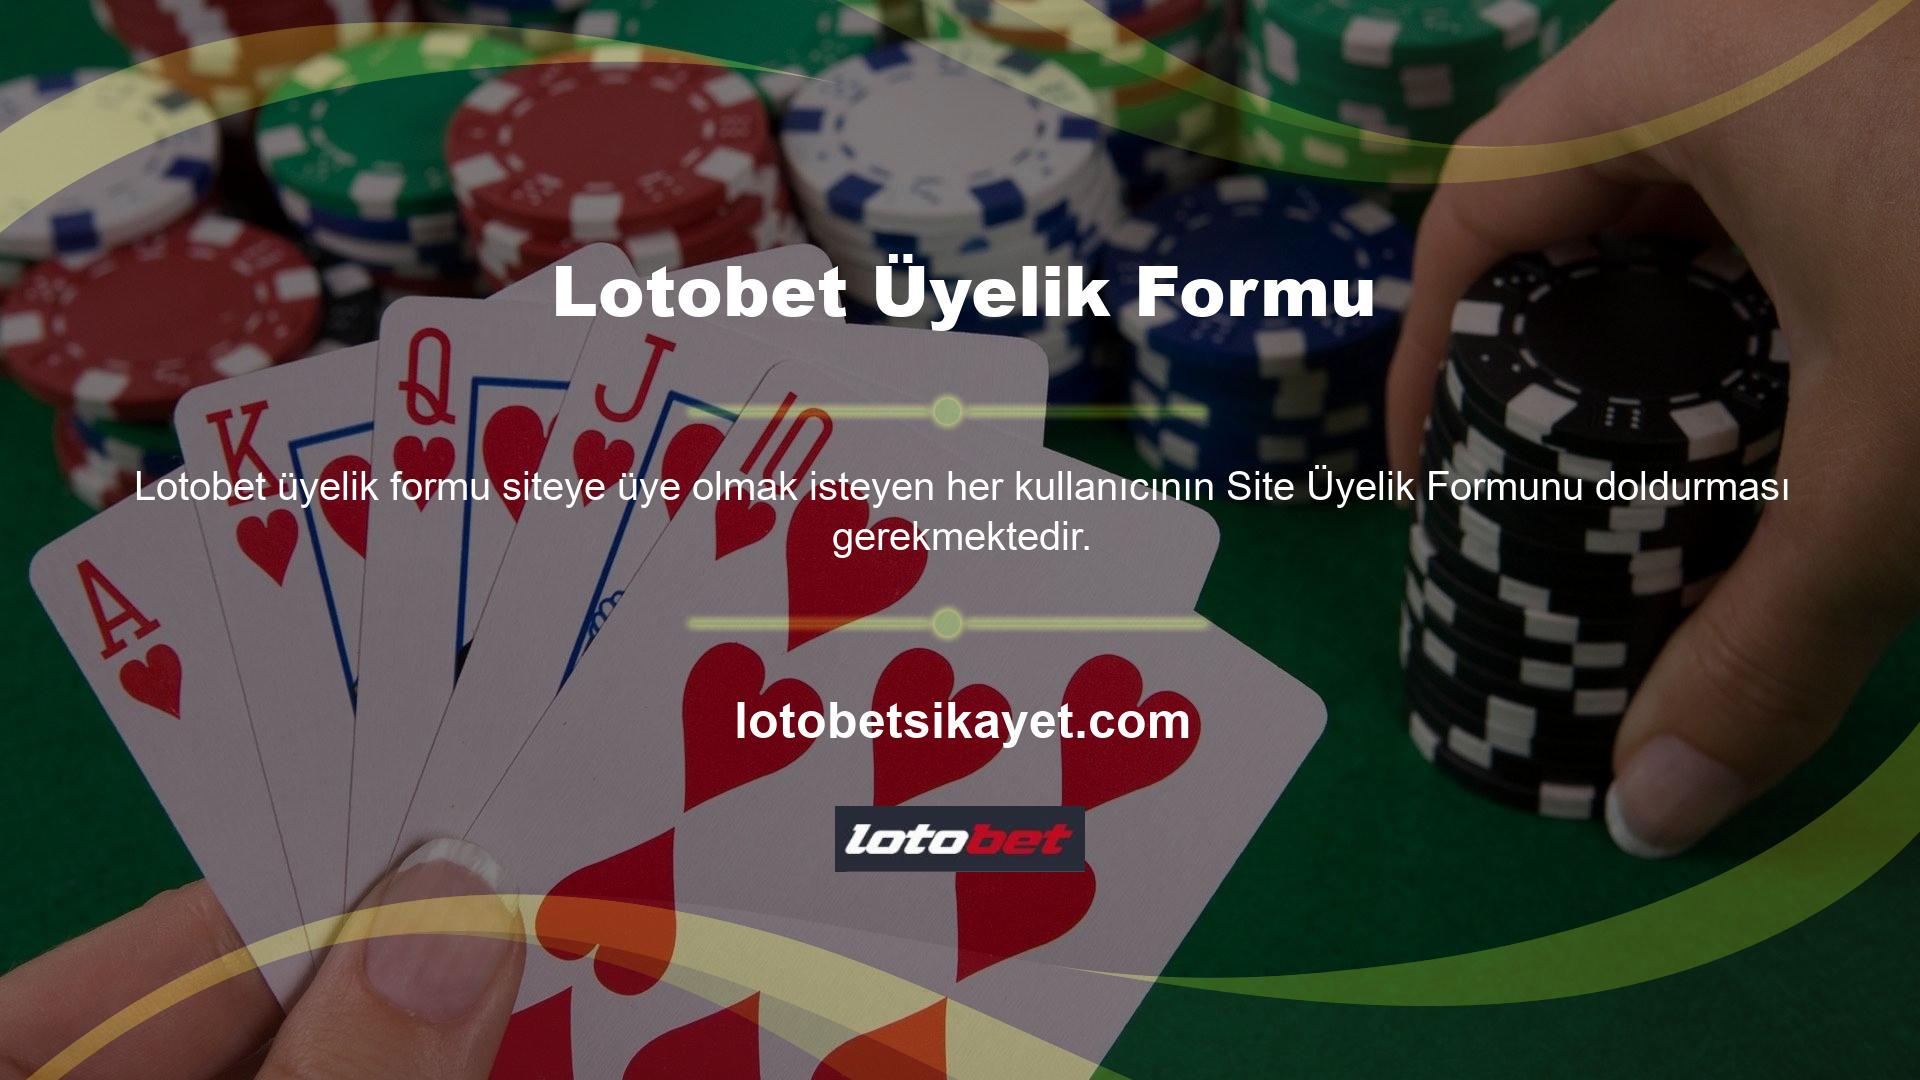 Lotobet üyelik formunda üye olmak isteyen kullanıcıların kişisel bilgileri ve üyelik bilgileri yer almaktadır